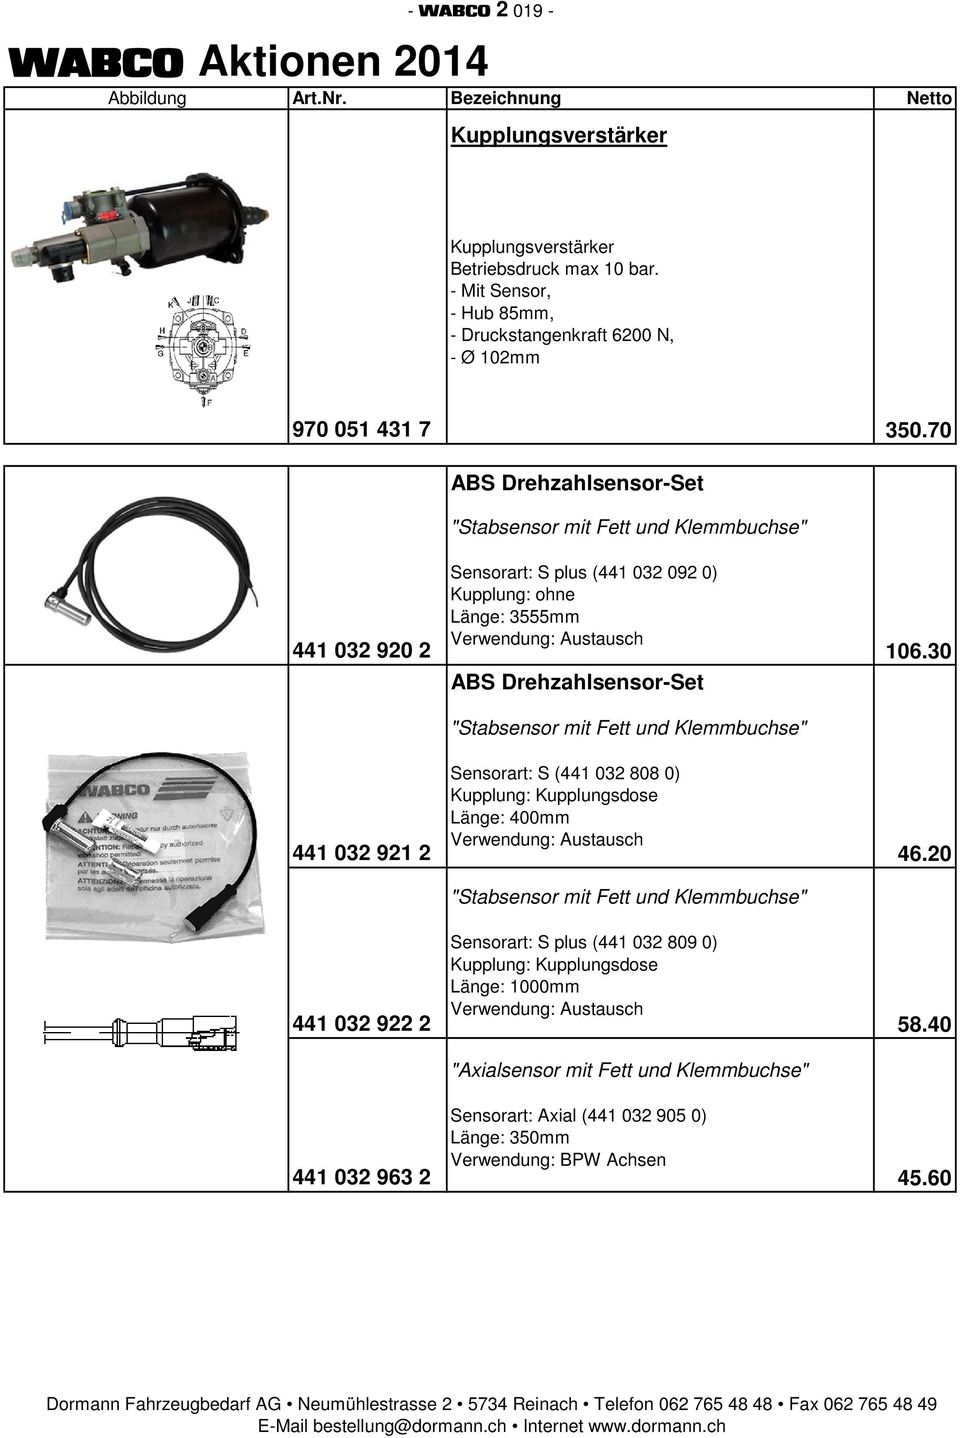 70 ABS Drehzahlsensor-Set "Stabsensor mit Fett und Klemmbuchse" Sensorart: S plus (441 032 092 0) Kupplung: ohne Länge: 3555mm Verwendung: Austausch 441 032 920 2 106.